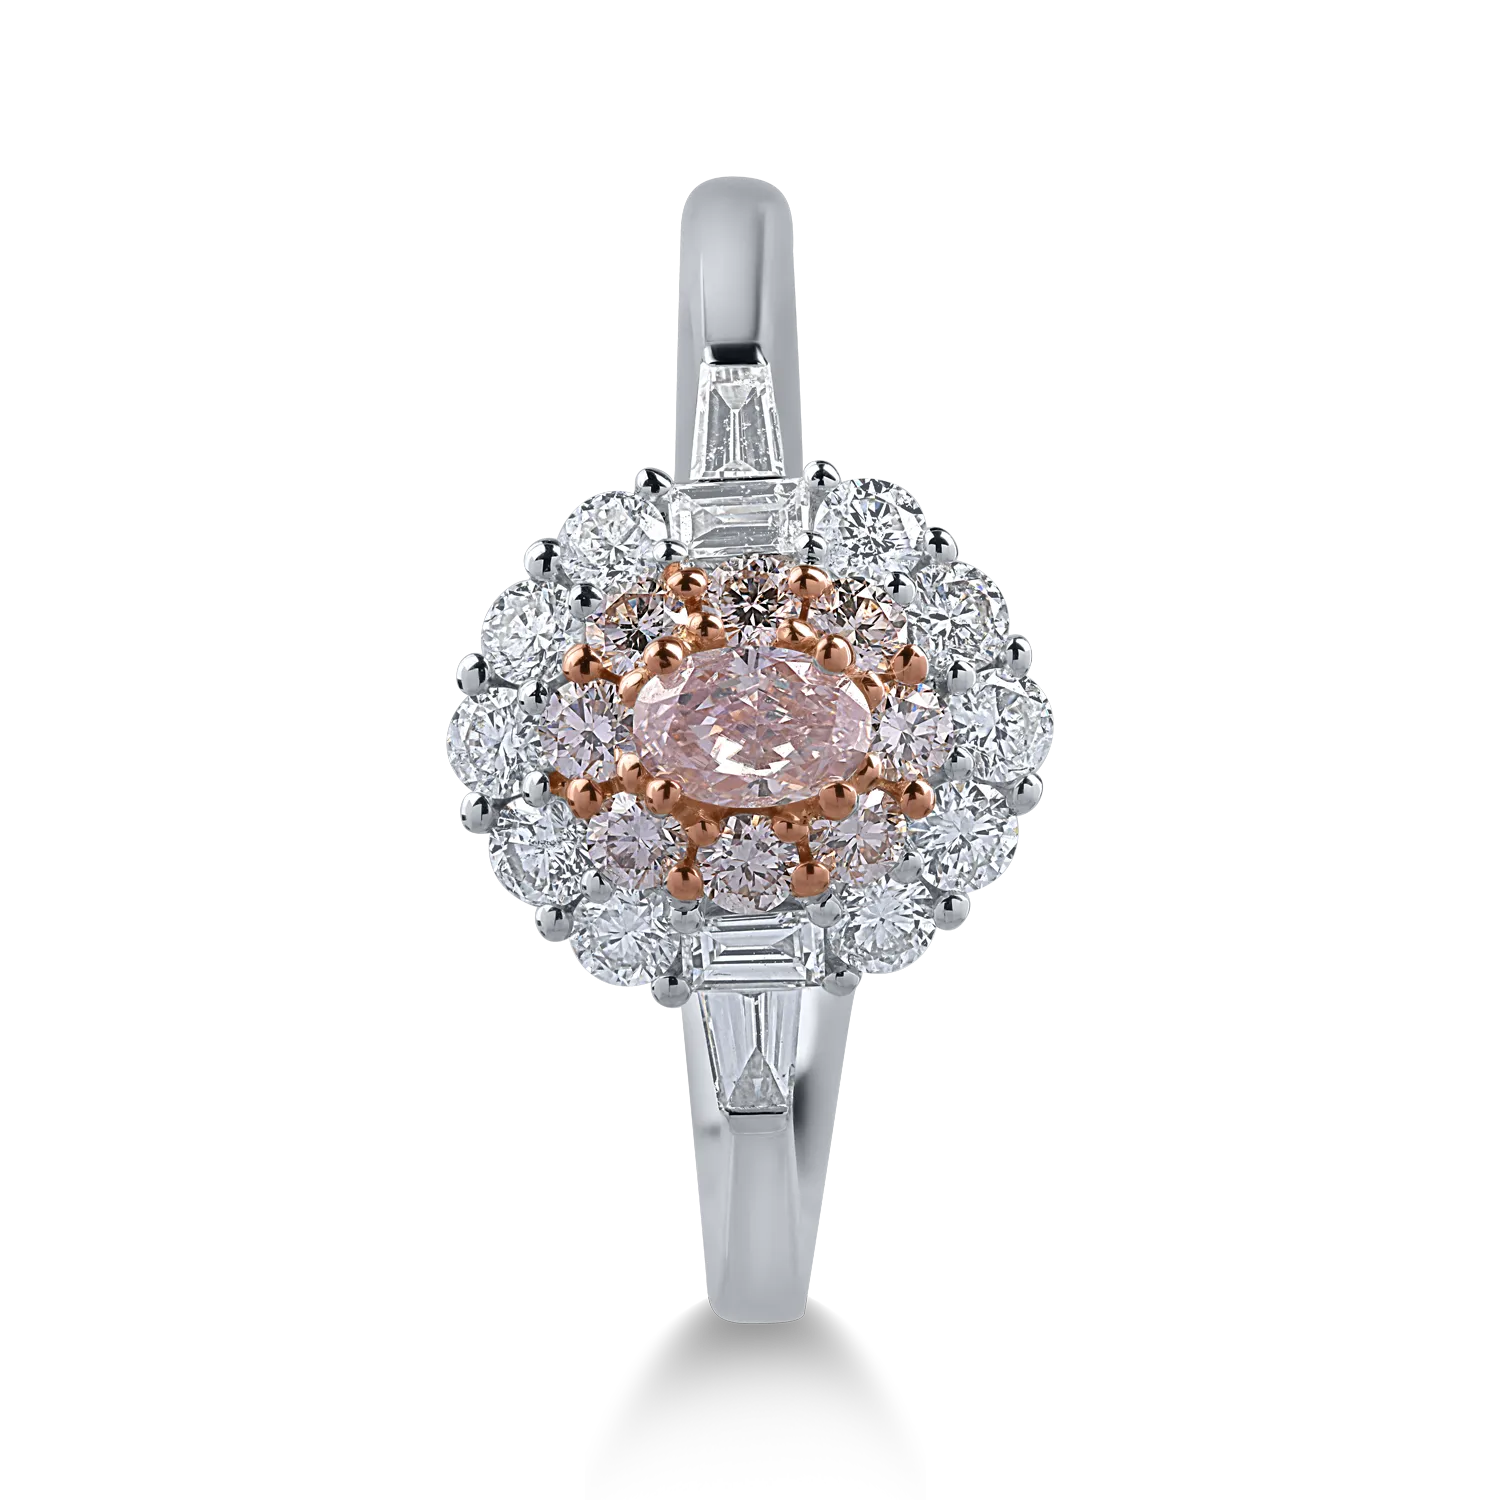 Inel din aur alb-roz cu diamante transparente de 0.5ct si diamante roz de 0.4ct